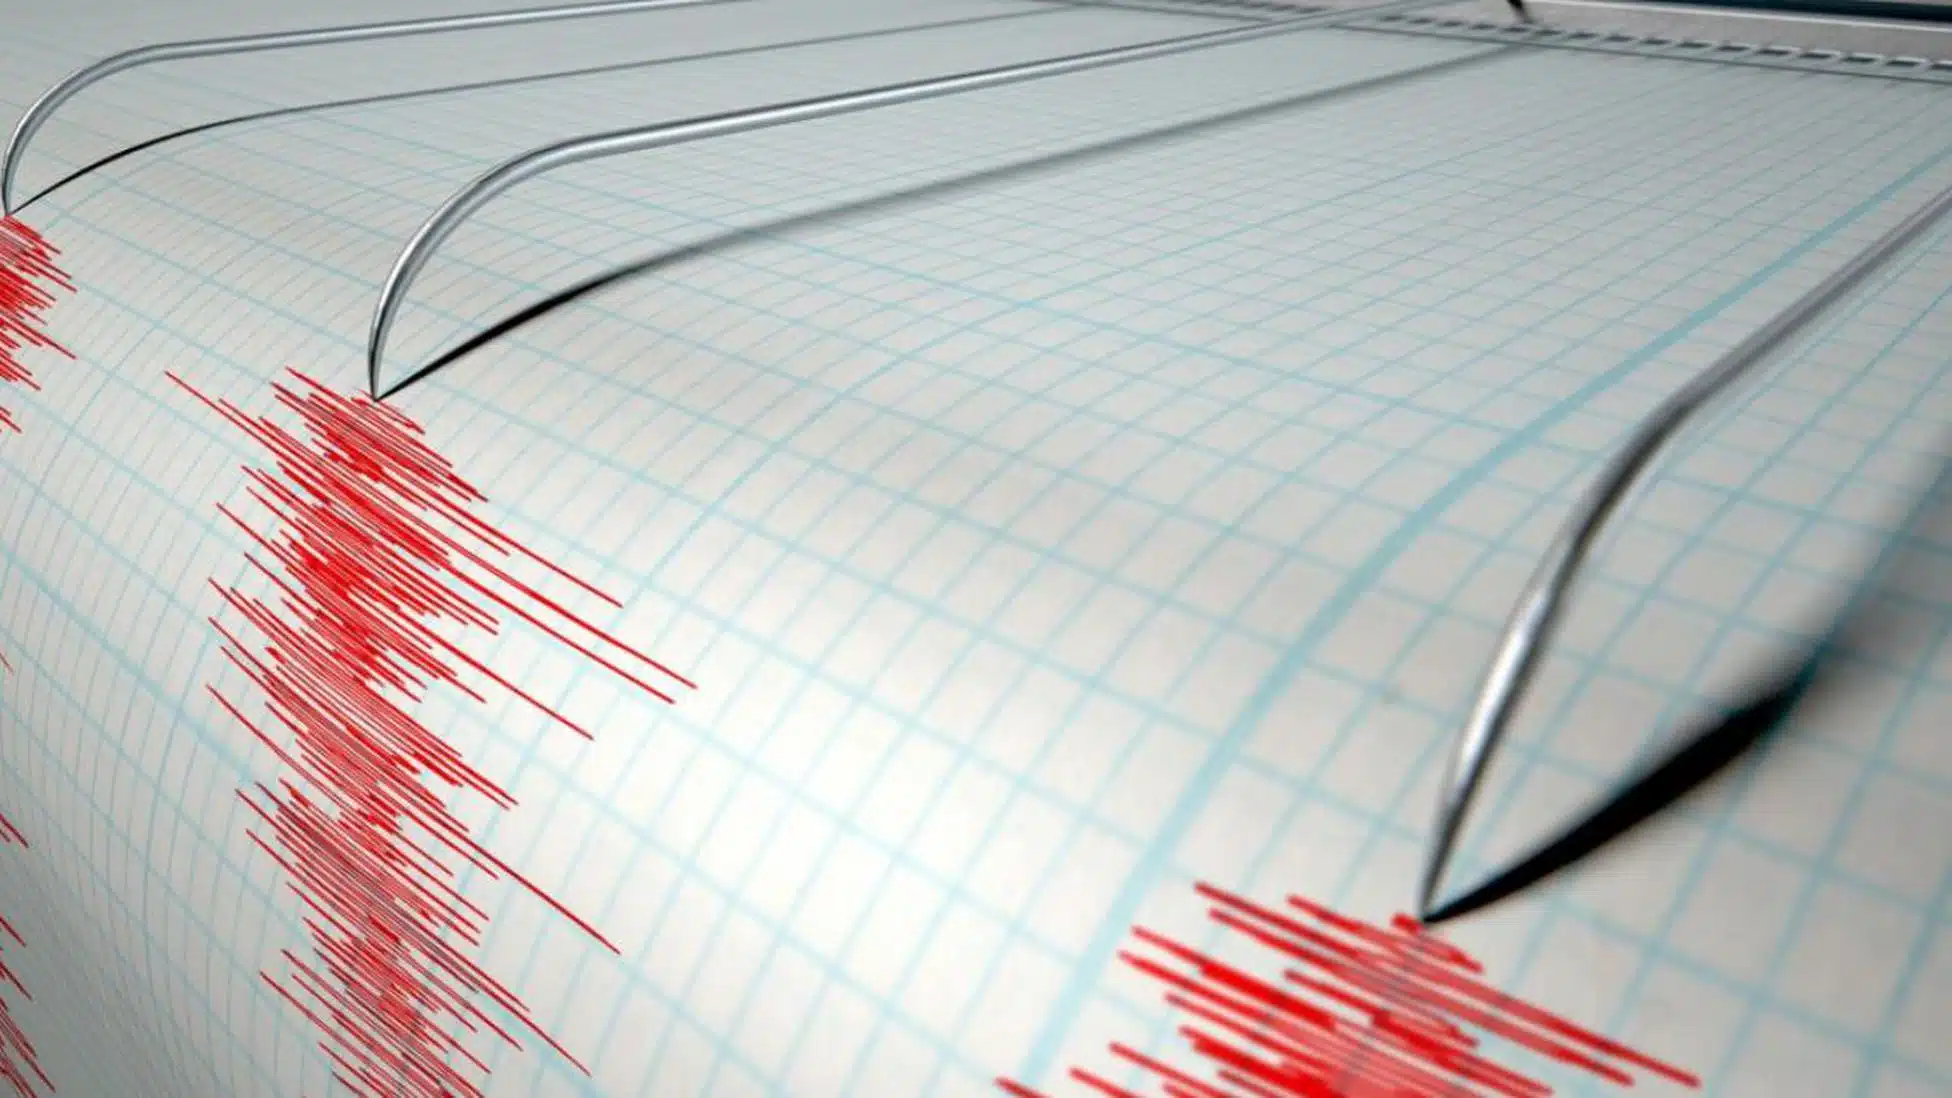 Terremoto en región de China; fue de 6.1 grados de magnitud y se sintió intensamente  